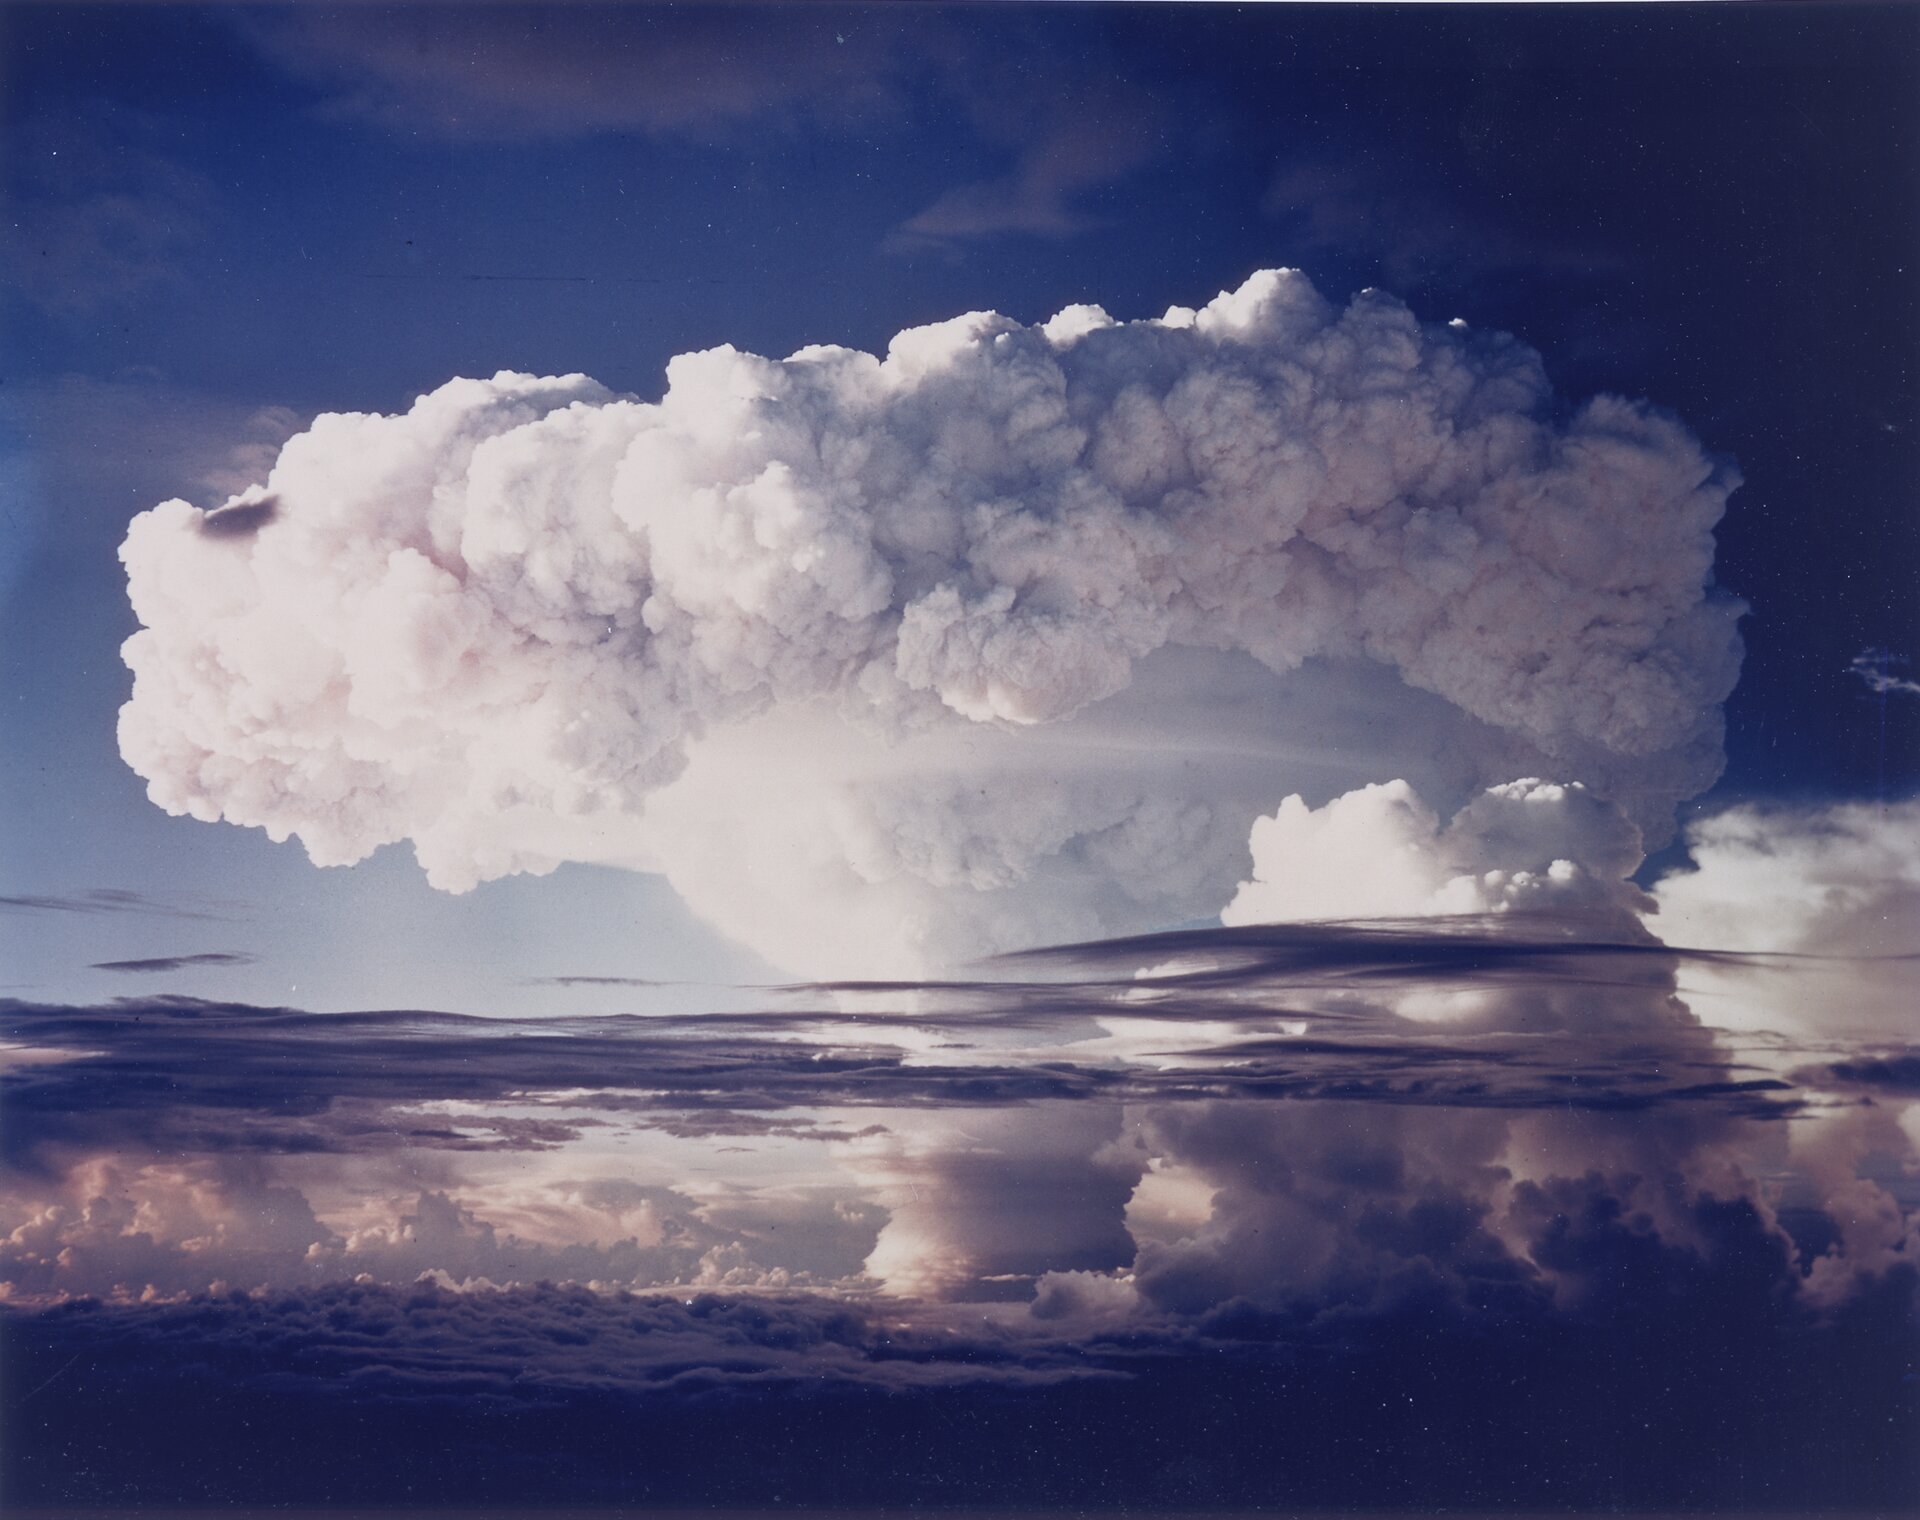 Kolorowe zdjęcie 6: Ivy Mike, próba jądrowa nad oceanem. Zdjęcie przedstawia białą chmurę tworzącą grzyb atomowy. Górna część grzyba to kłęby białych chmur ułożonych w krąg.